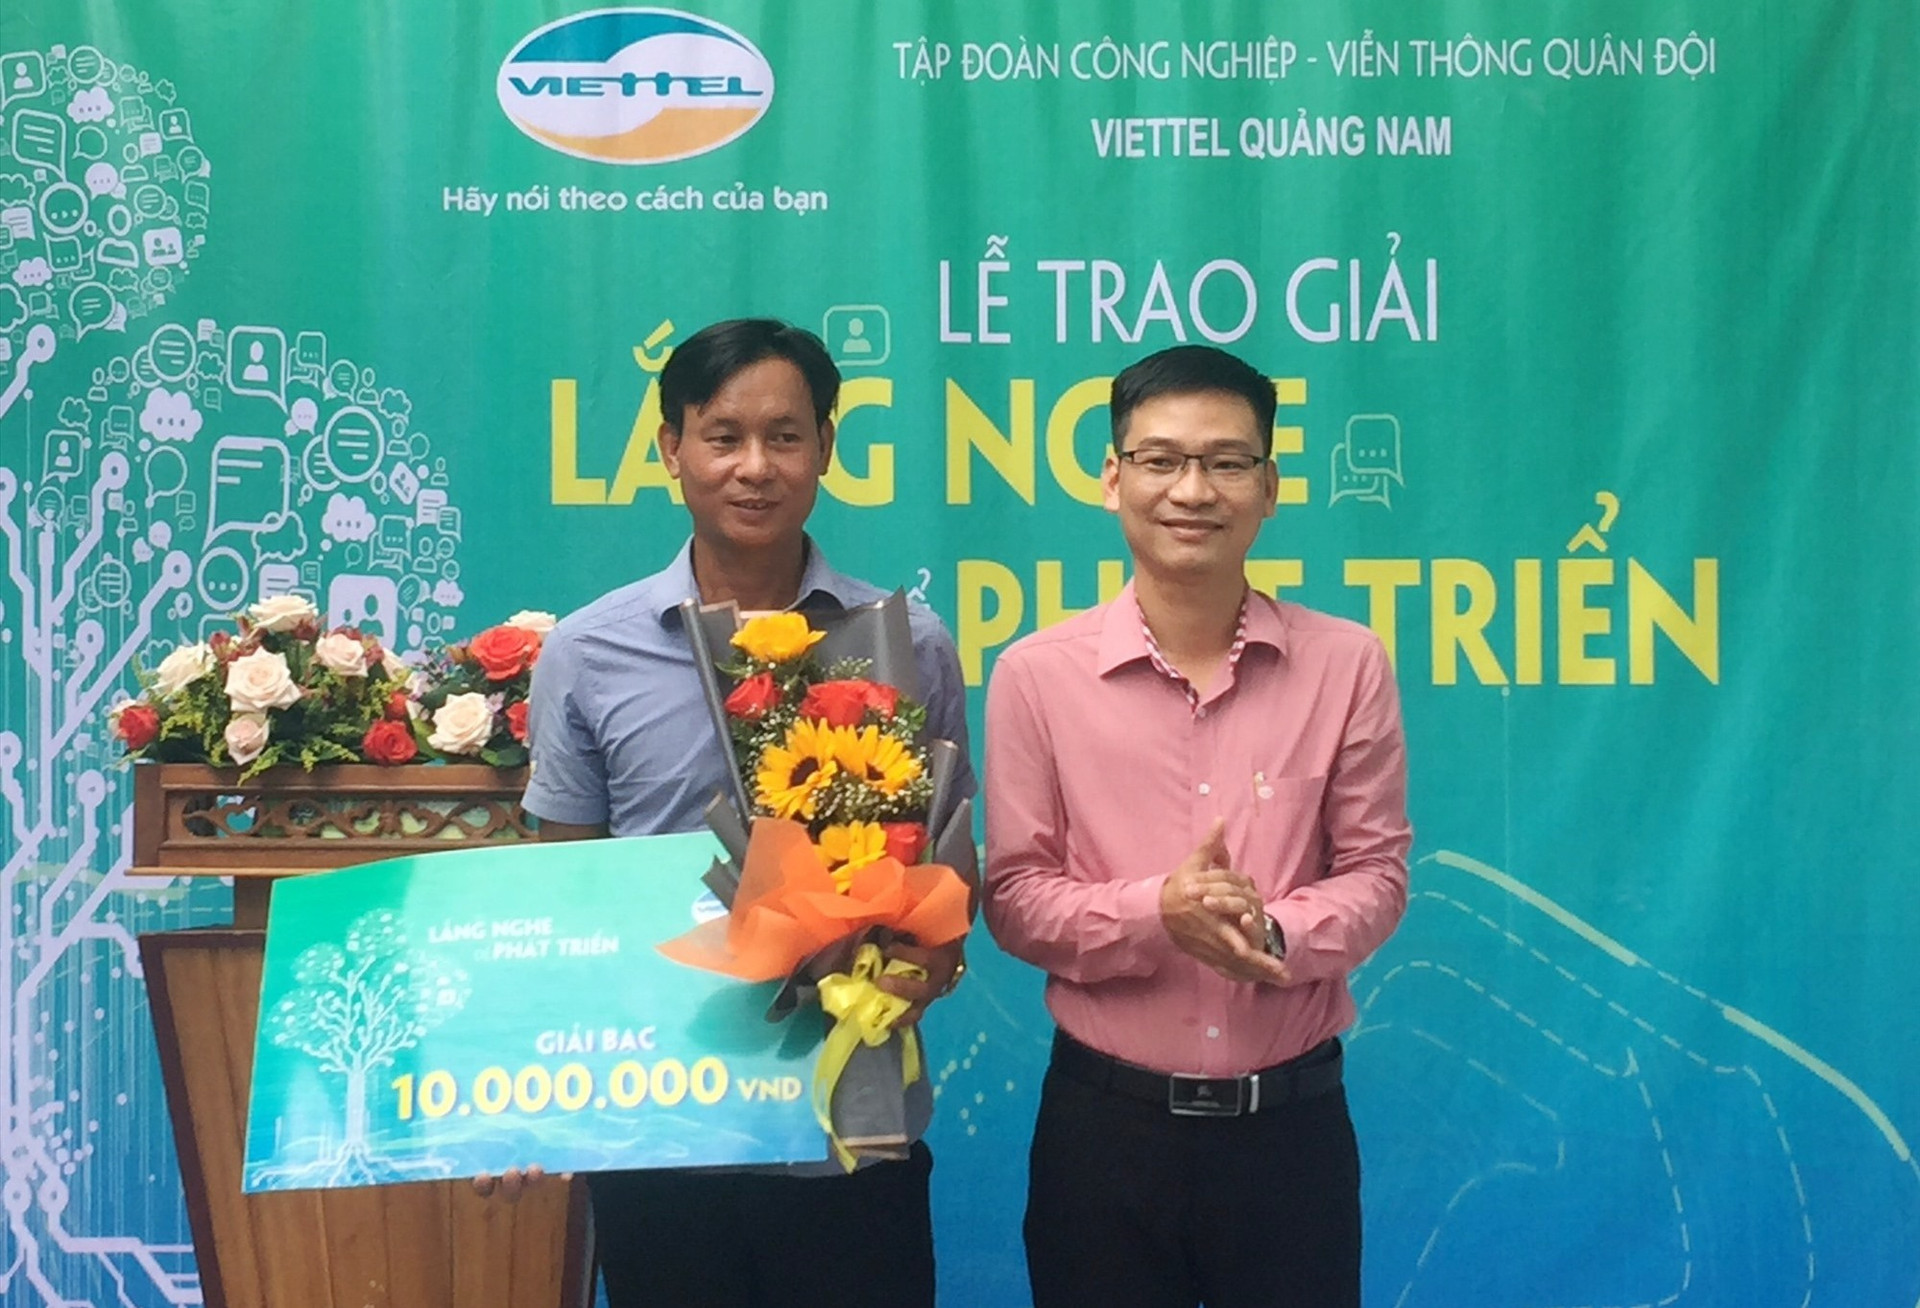 Khách hàng Trần Văn Hùng nhận giải Bạc với giá trị 10 triệu đồng từ chương trình. Ảnh: V.A